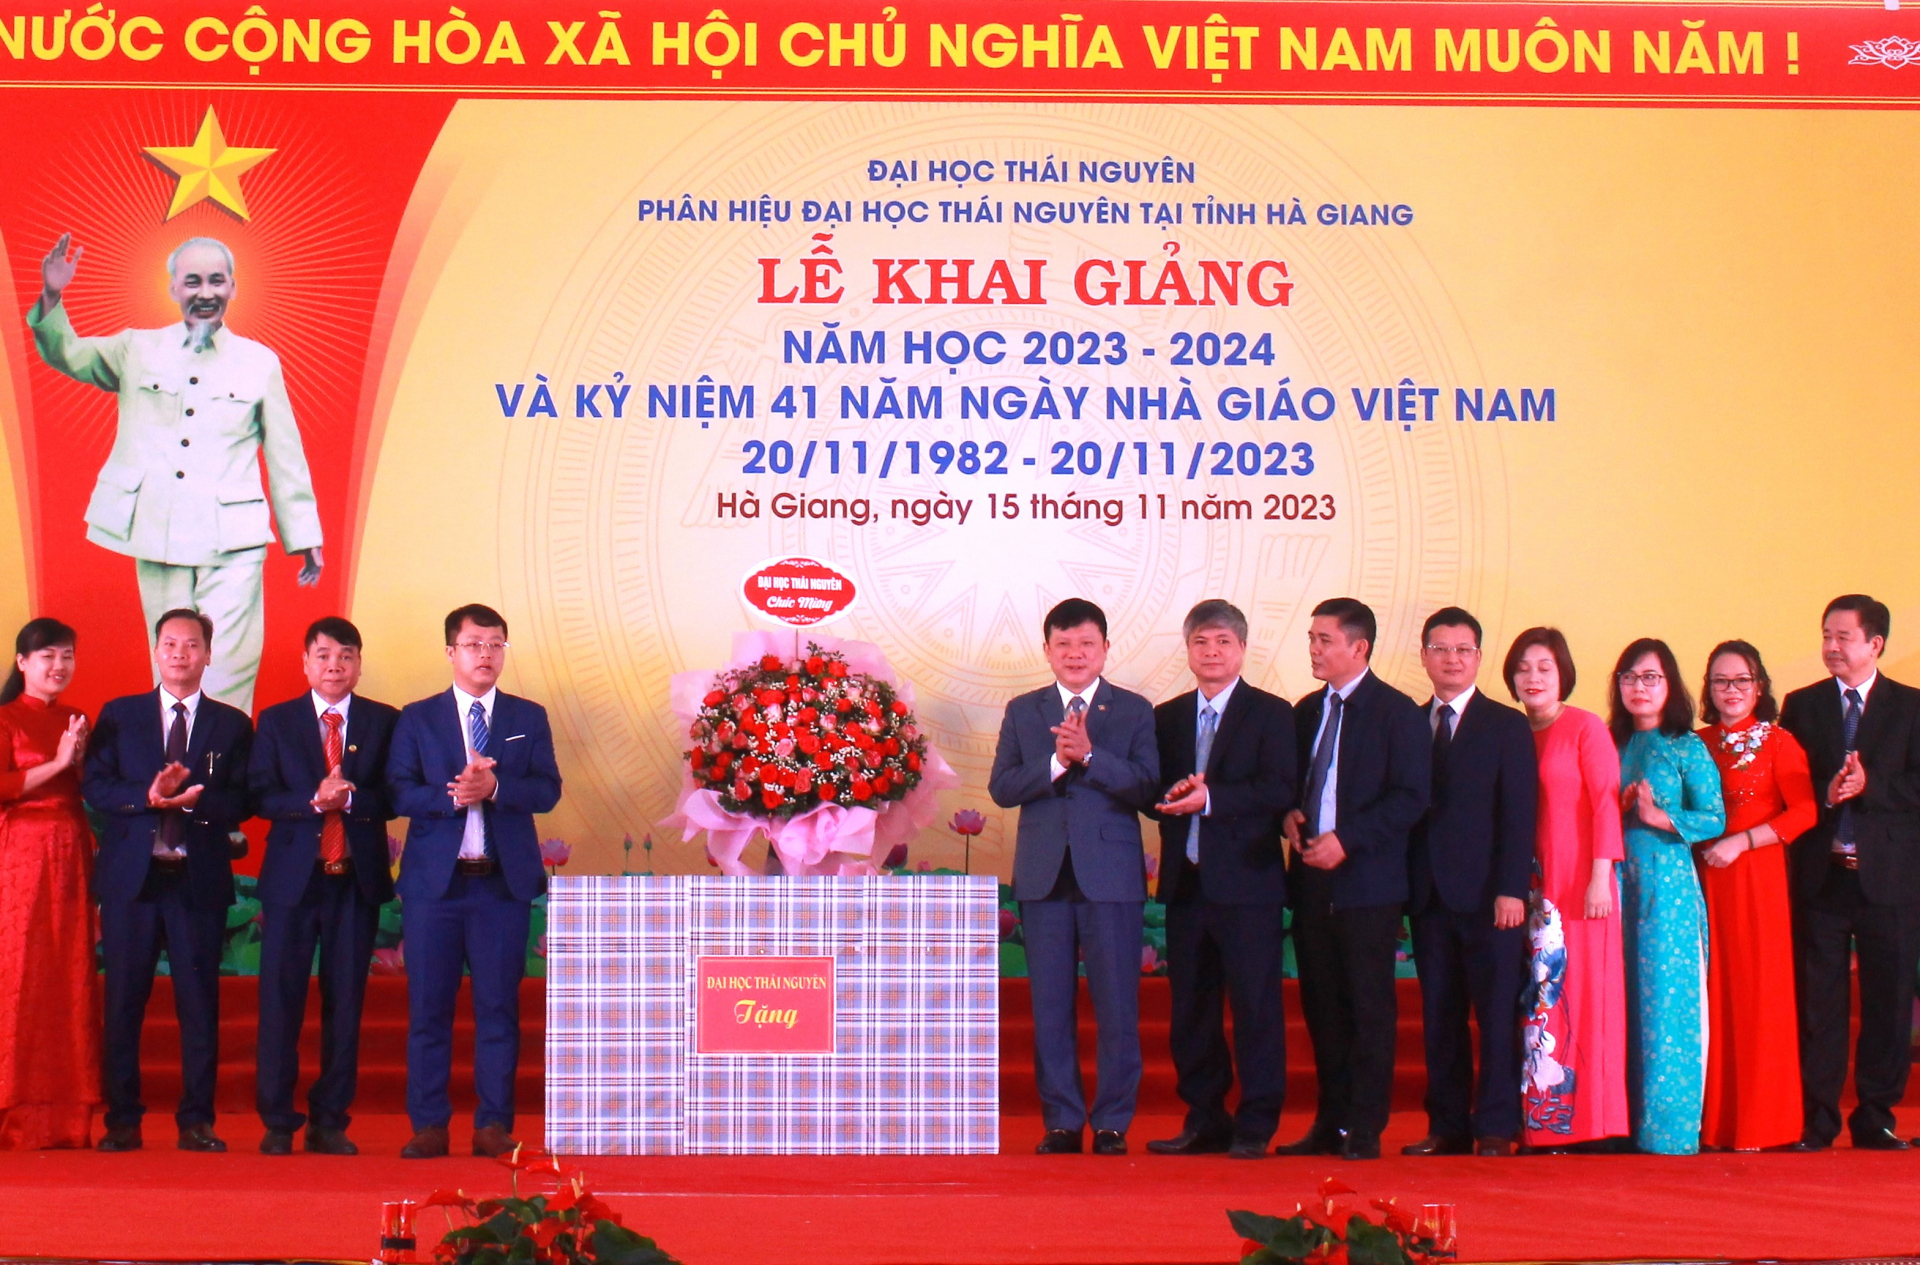 Lãnh đạo Đại học Thái Nguyên tặng hoa chúc mừng Phân hiệu